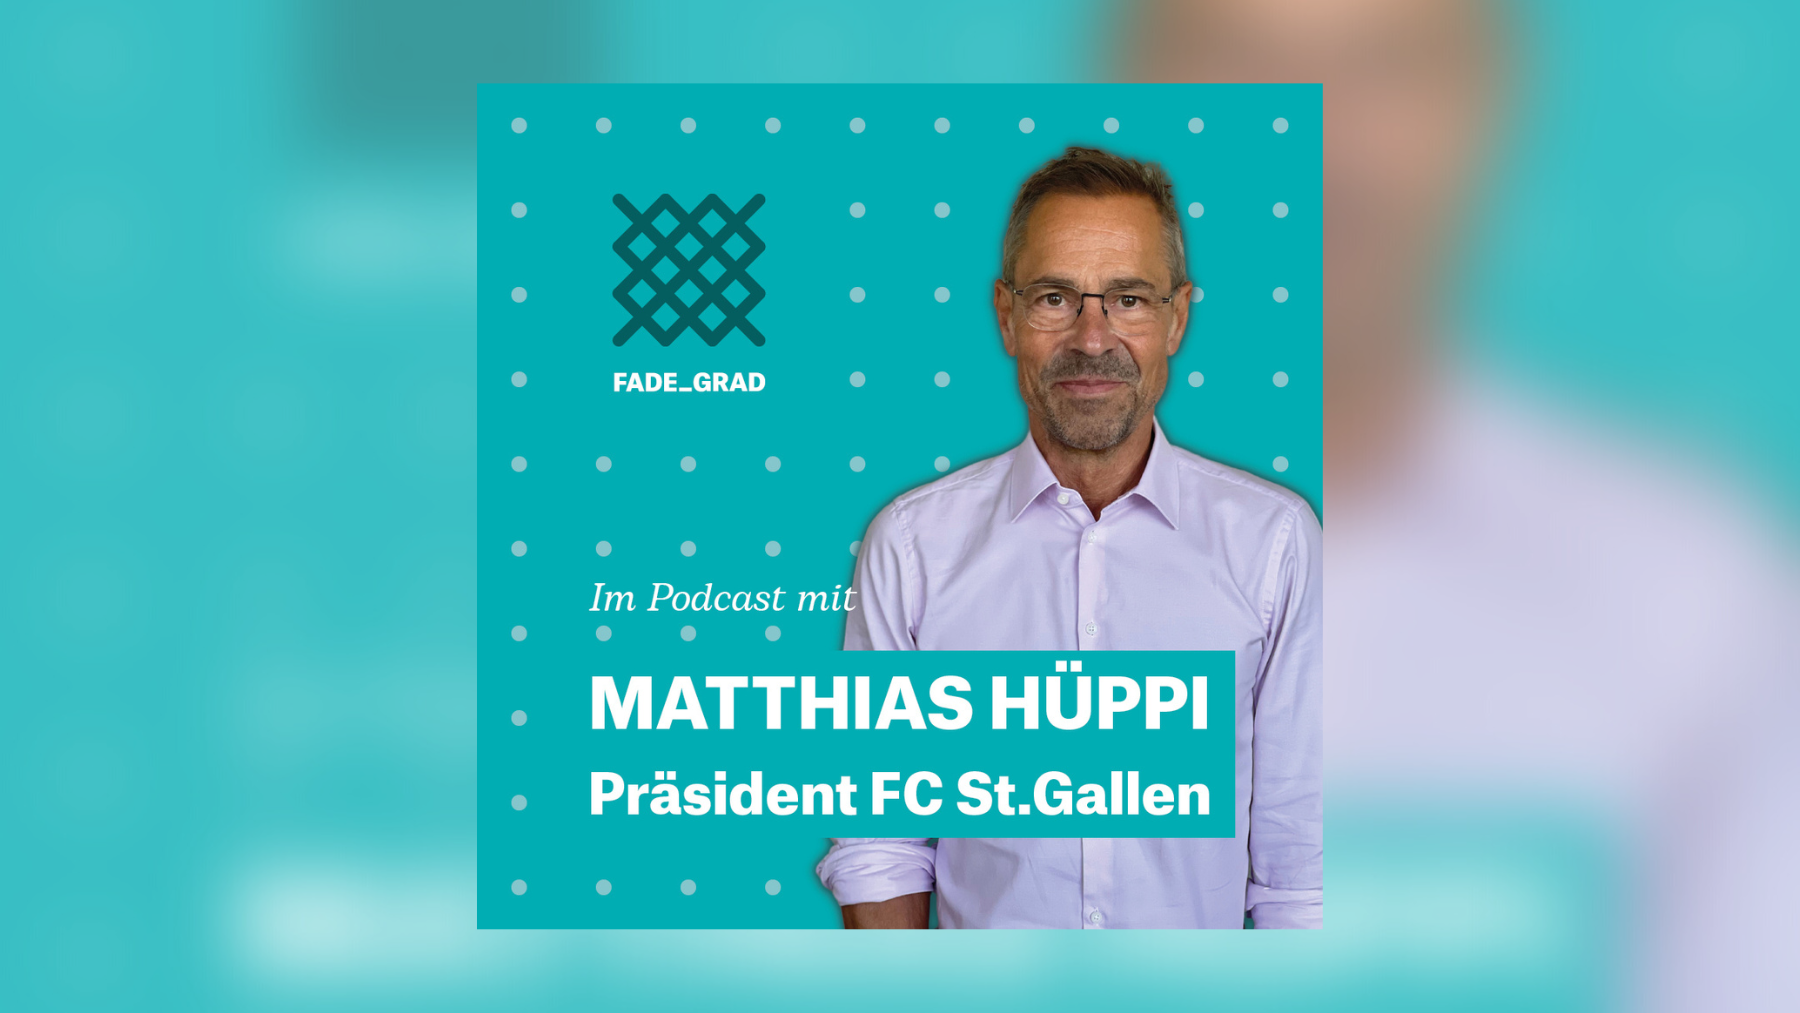 Matthias Hüppi ist Präsident des FC St.Gallen und zu Gast im fadegrad-Podcast.